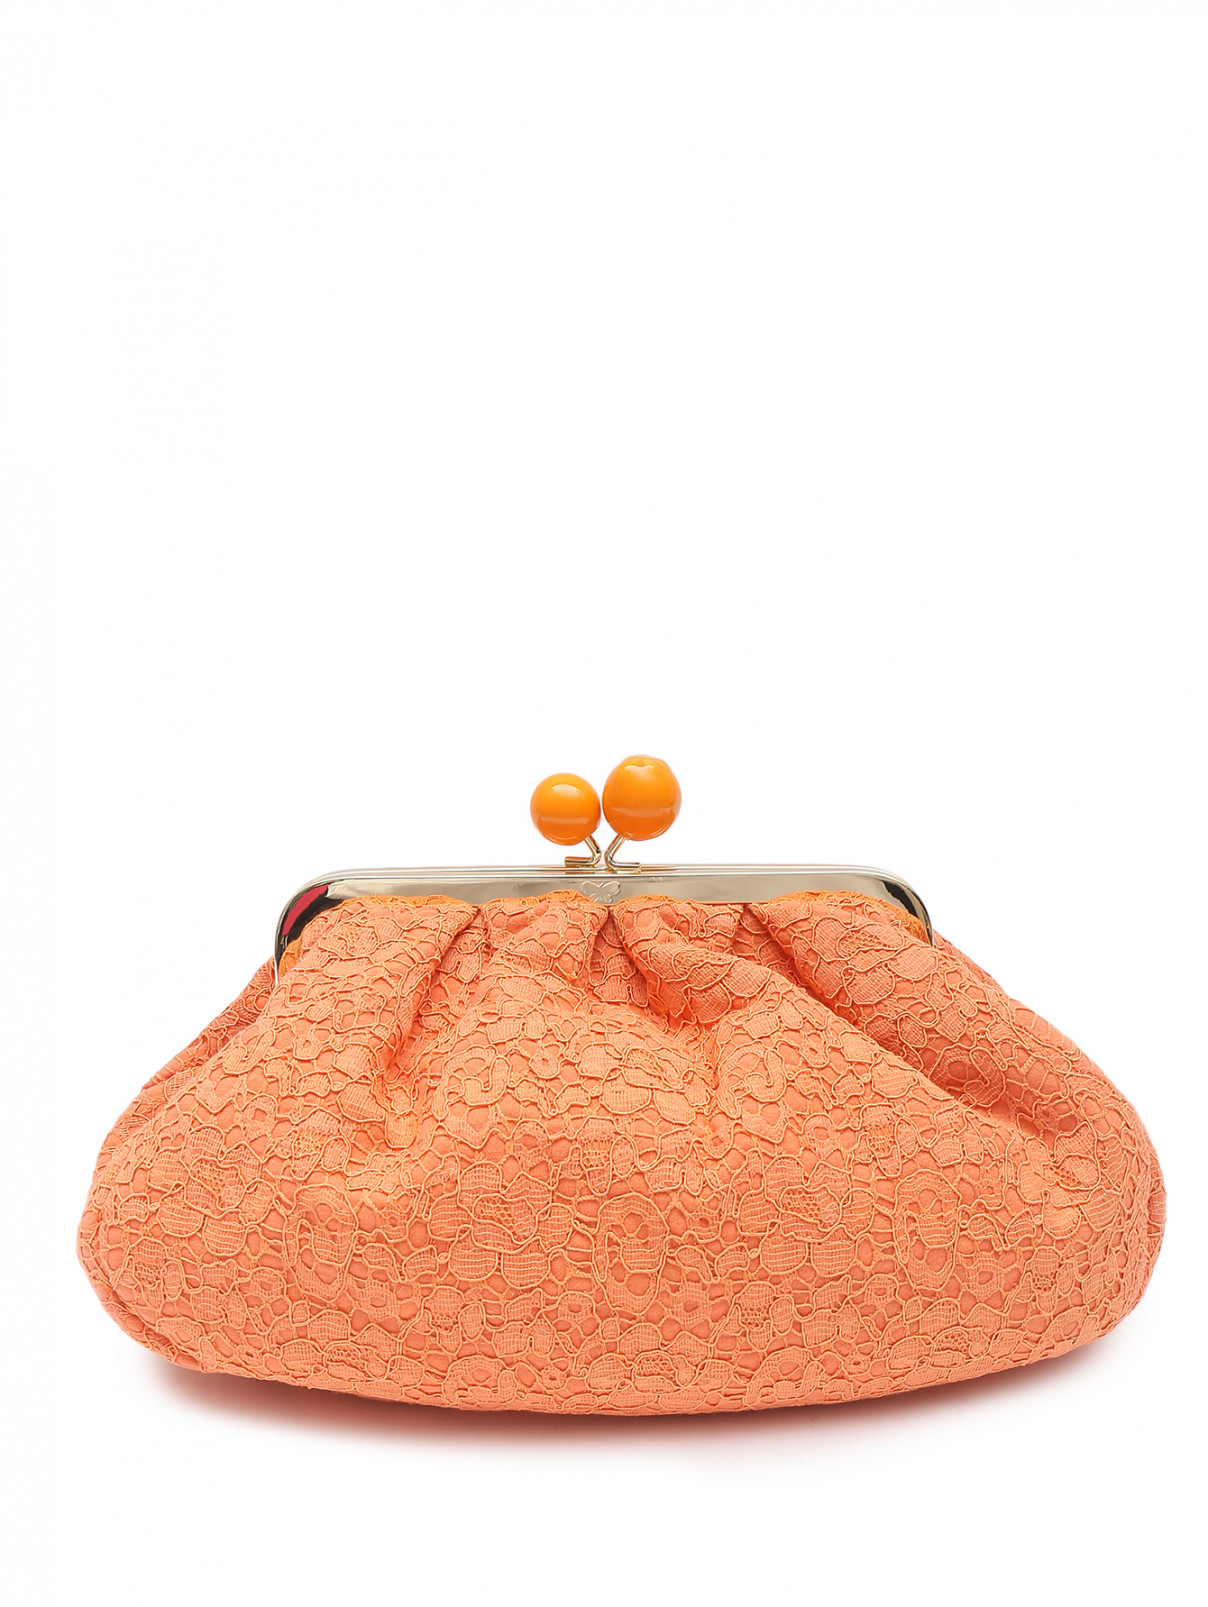 Сумка из текстиля с золотой фурнитурой Weekend Max Mara  –  Общий вид  – Цвет:  Оранжевый